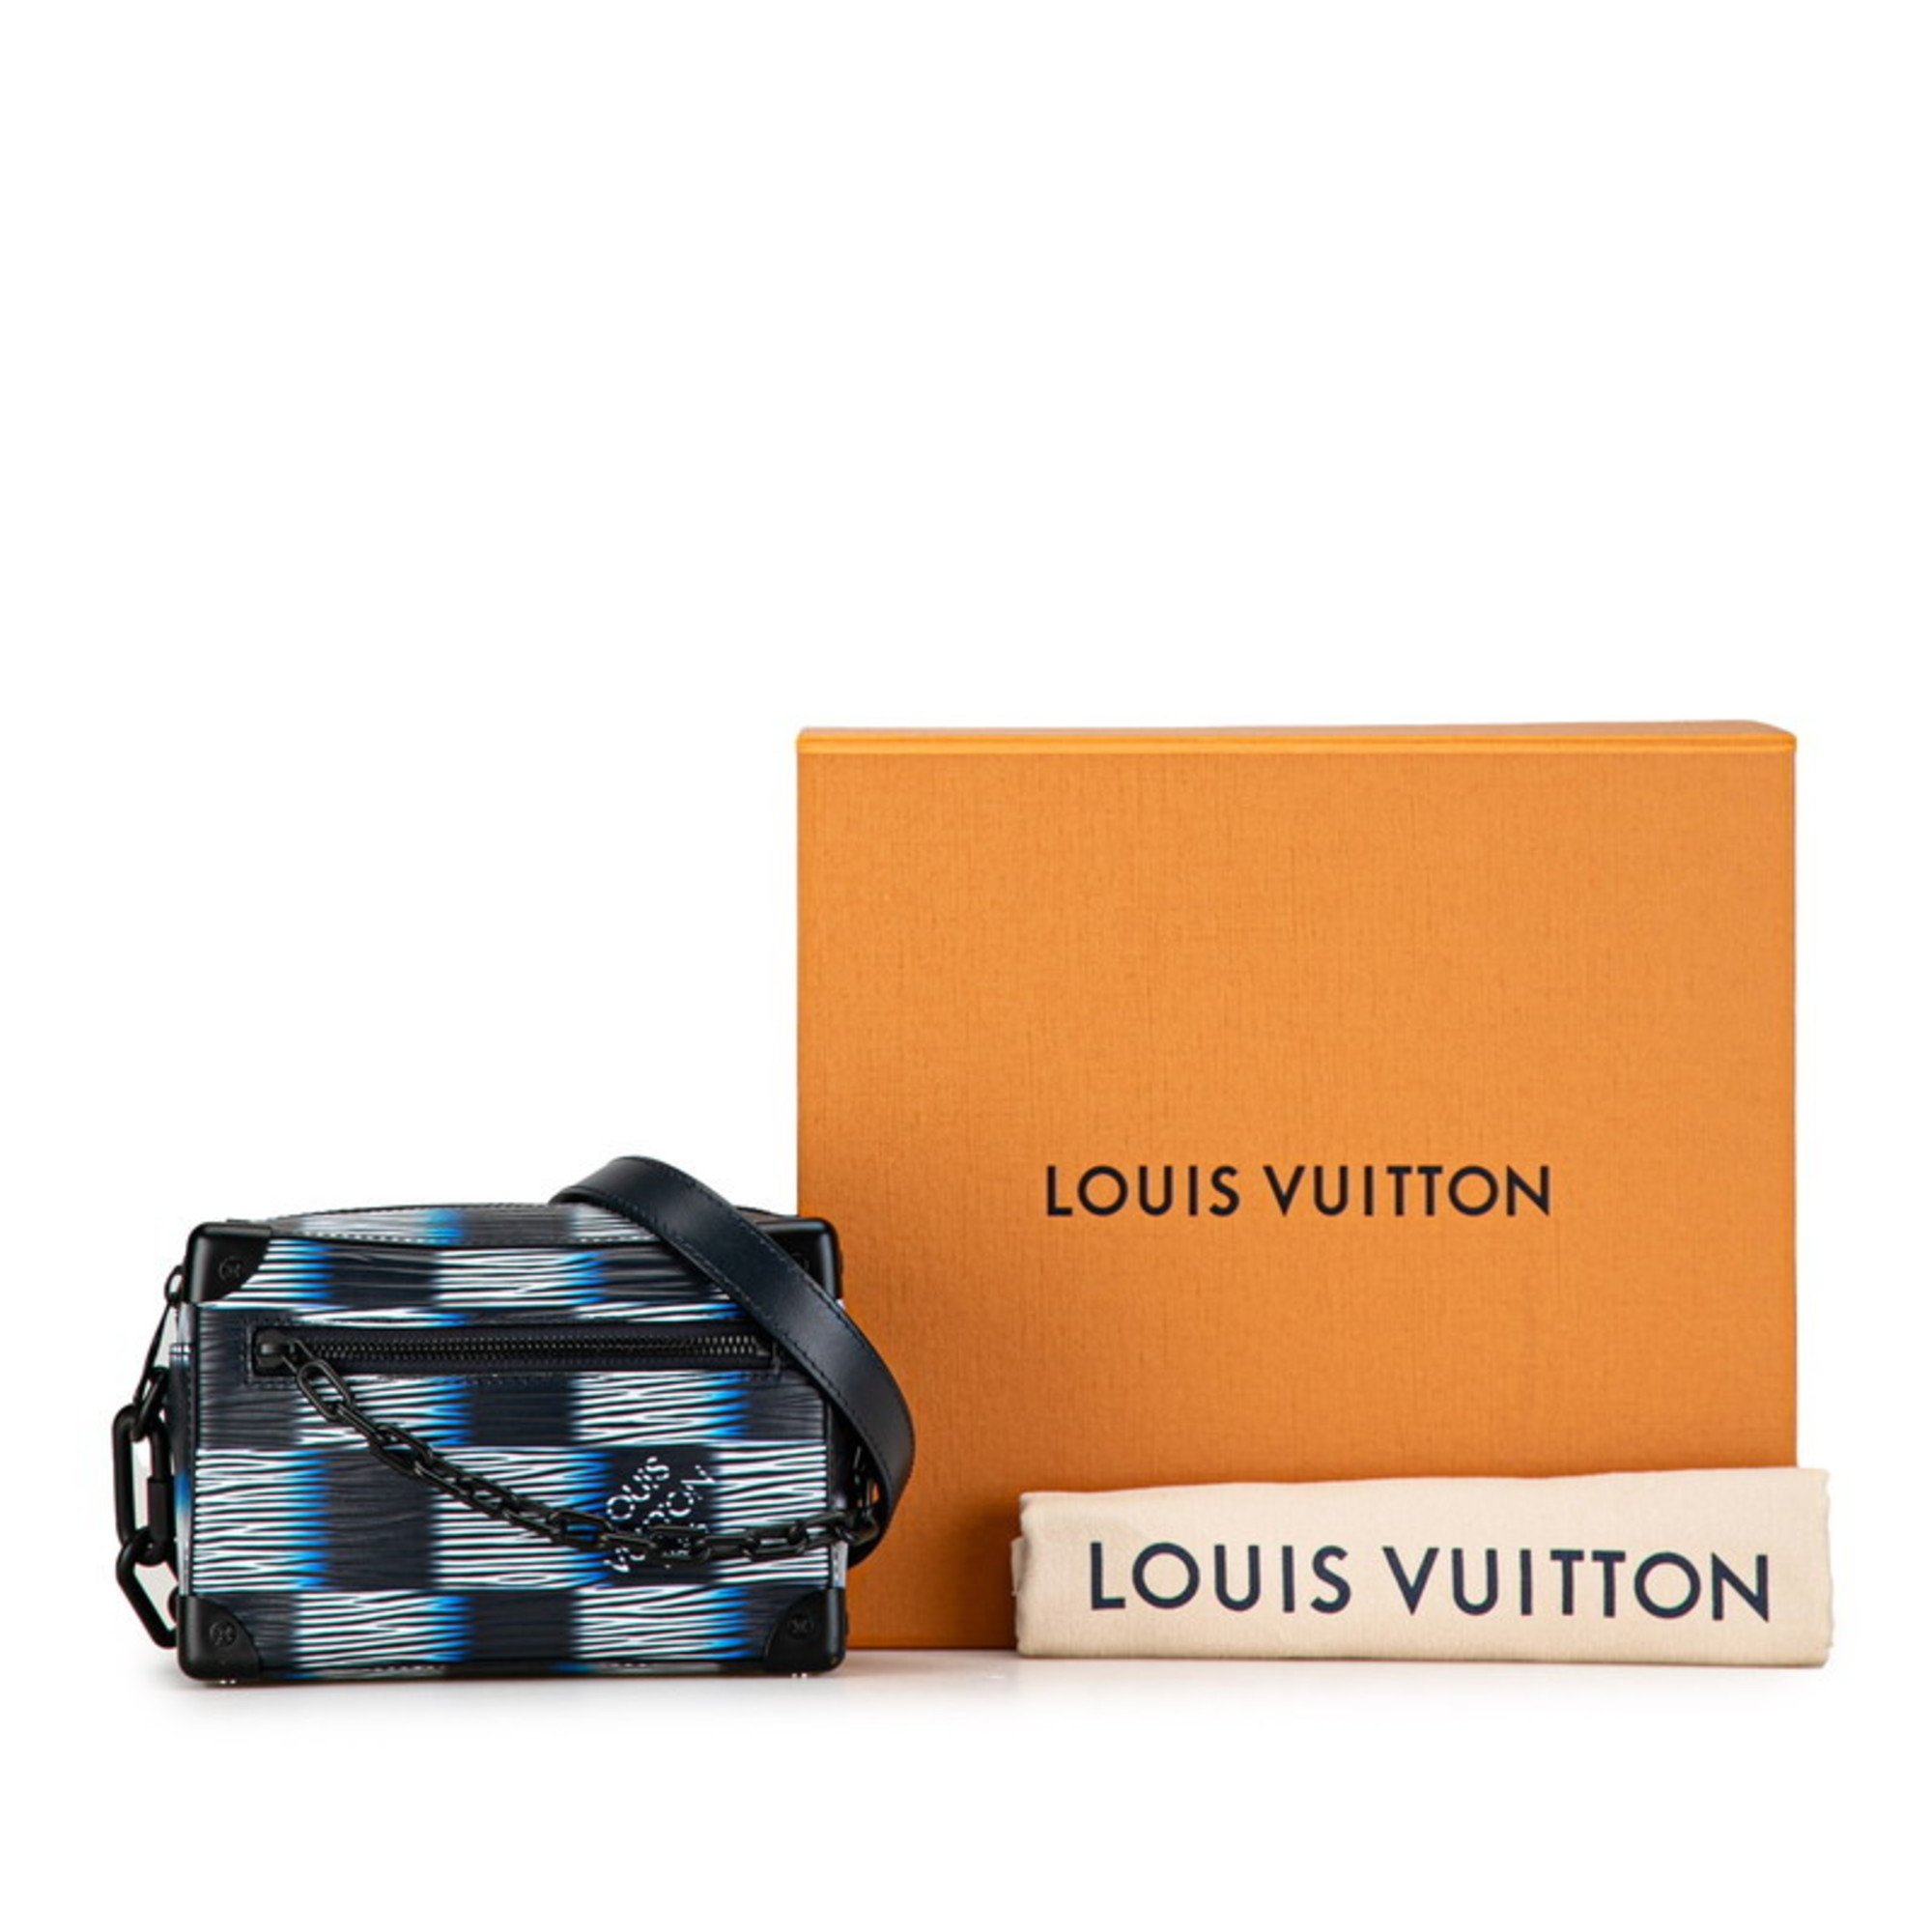 Louis Vuitton Damier Rush Epi Soft Trunk Chain Shoulder Bag M23728 Black White Leather Women's LOUIS VUITTON